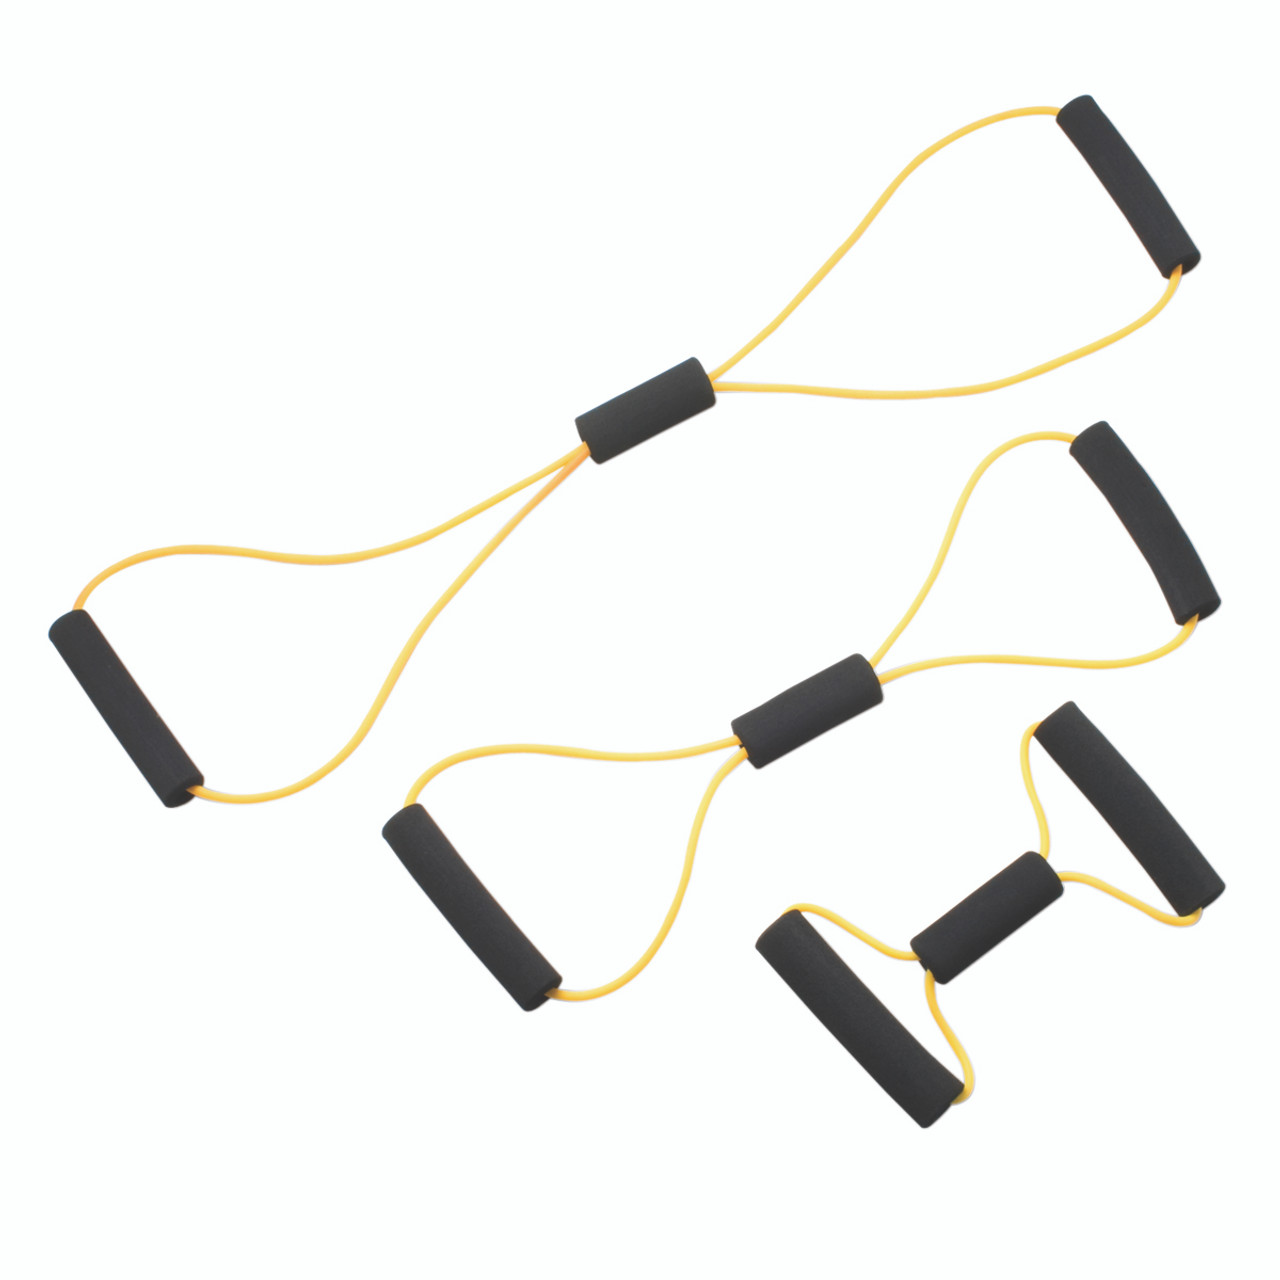 CanDo¨ Tubing BowTieª Exerciser - 3-piece set (14", 22", 30"), yellow